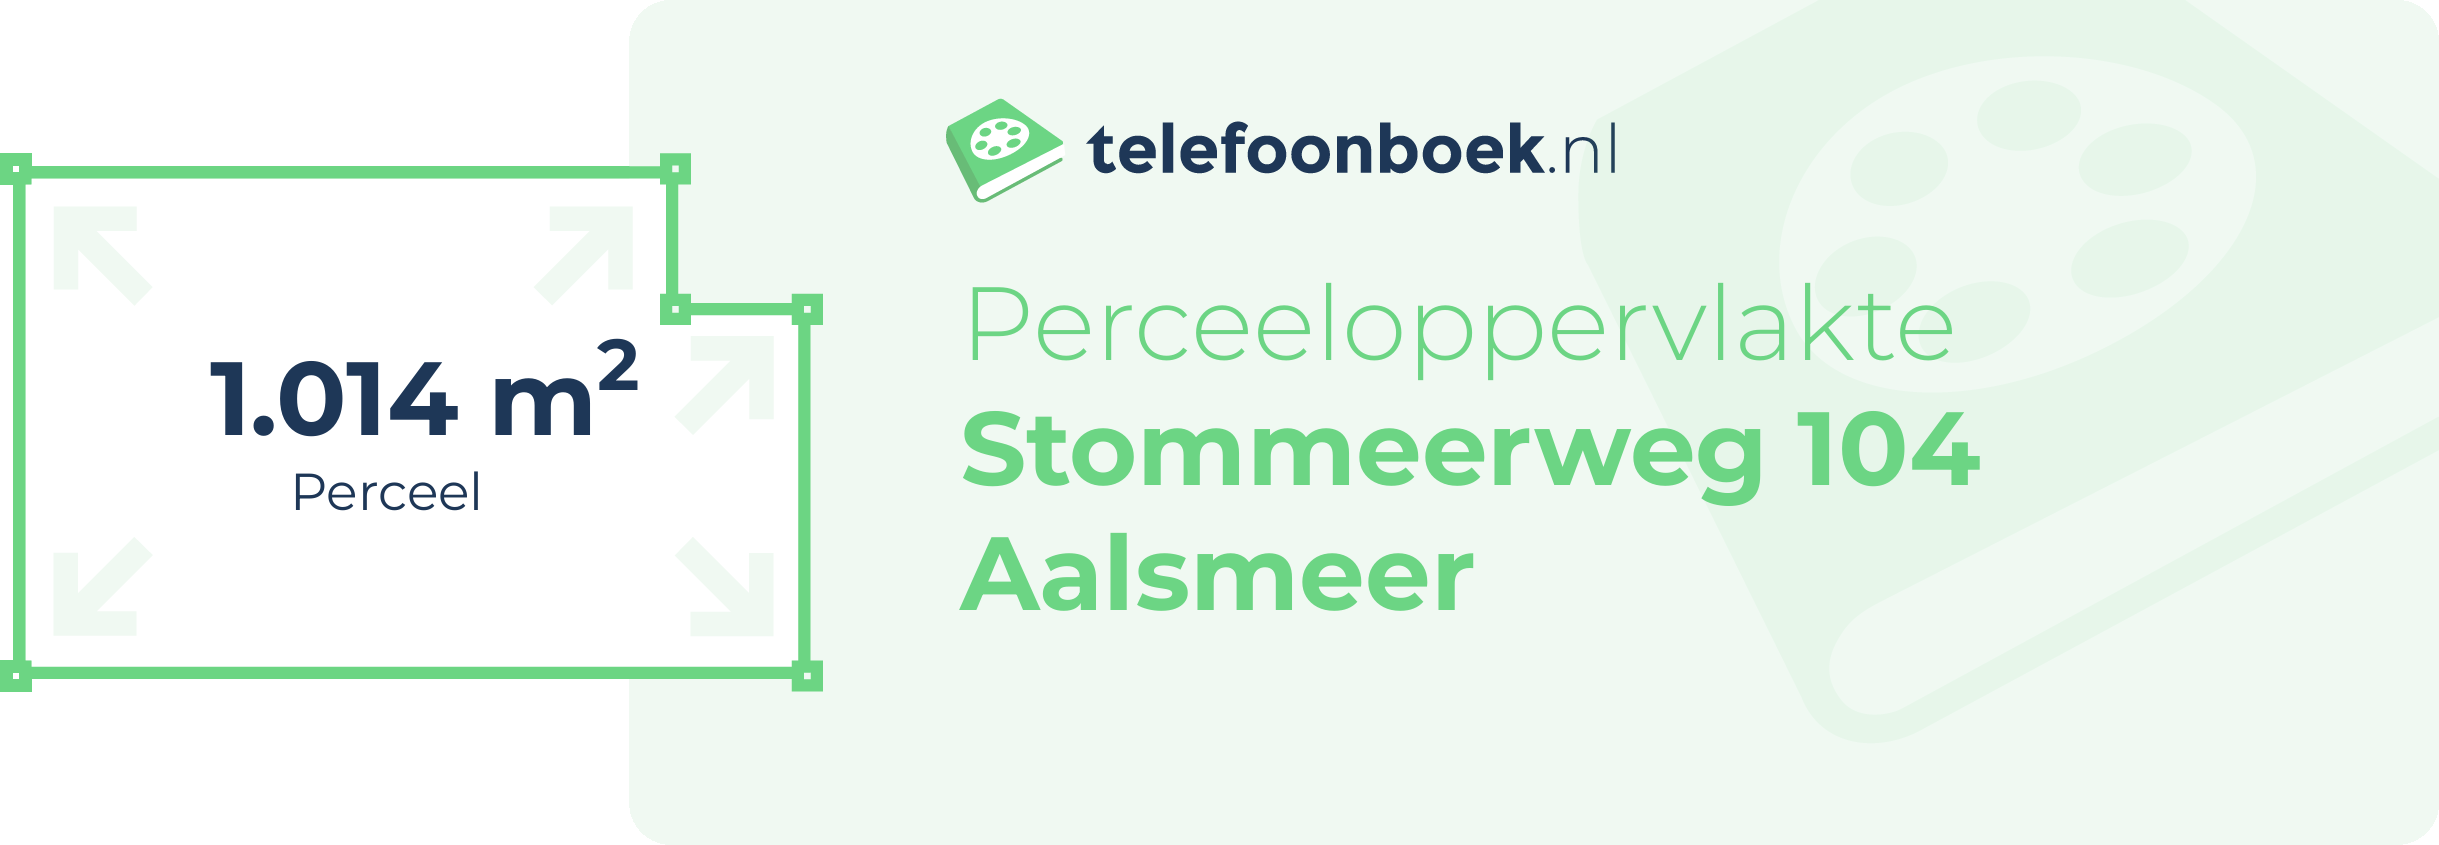 Perceeloppervlakte Stommeerweg 104 Aalsmeer